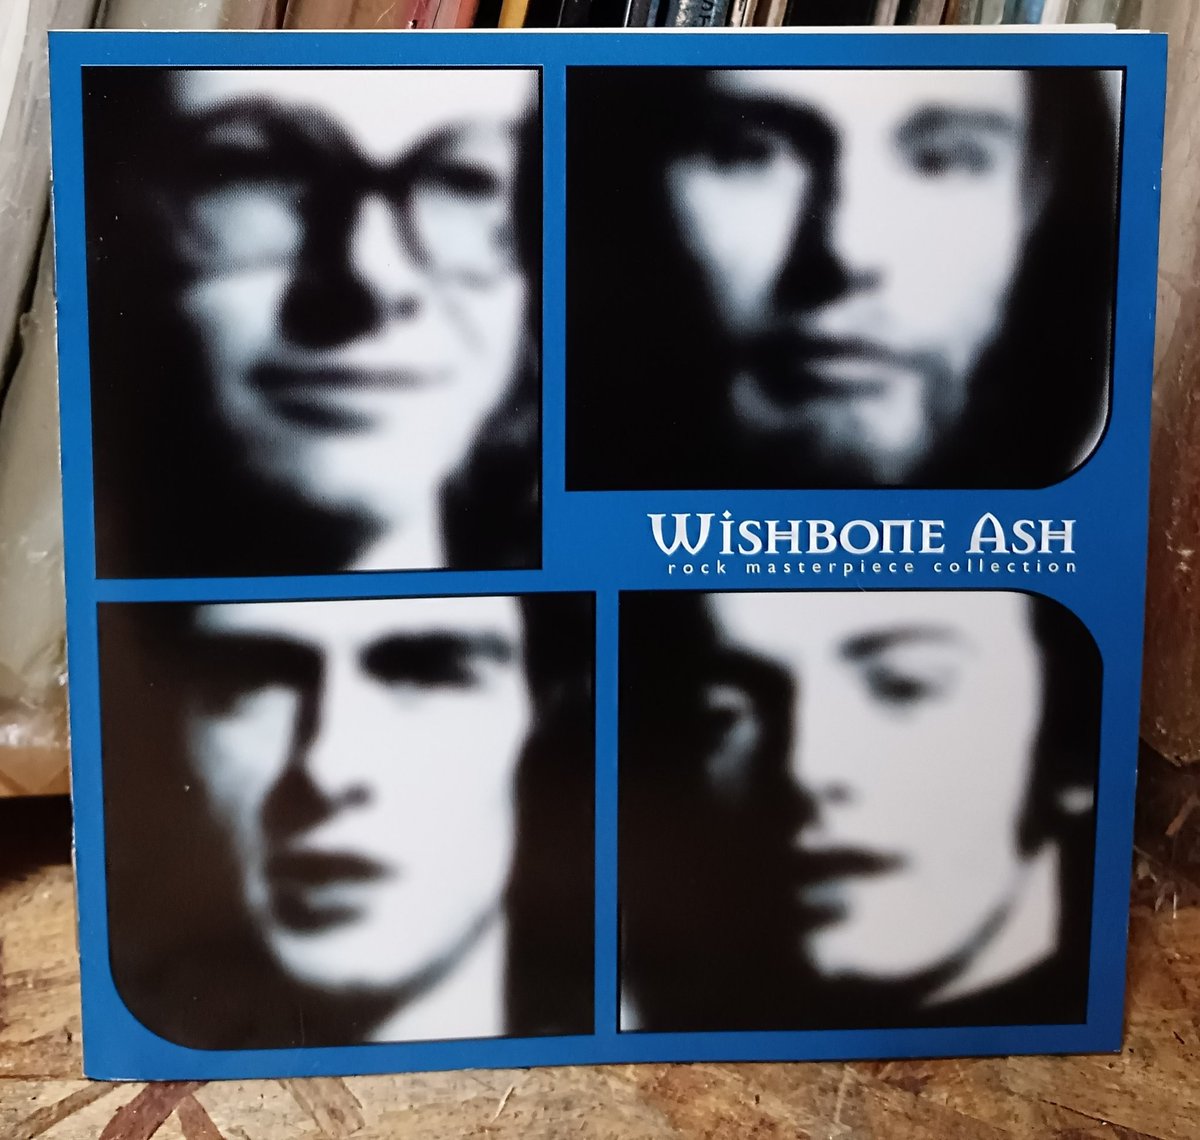 今夜は　#ウィッシュボーンアッシュ
#wishboneash #音楽のある生活